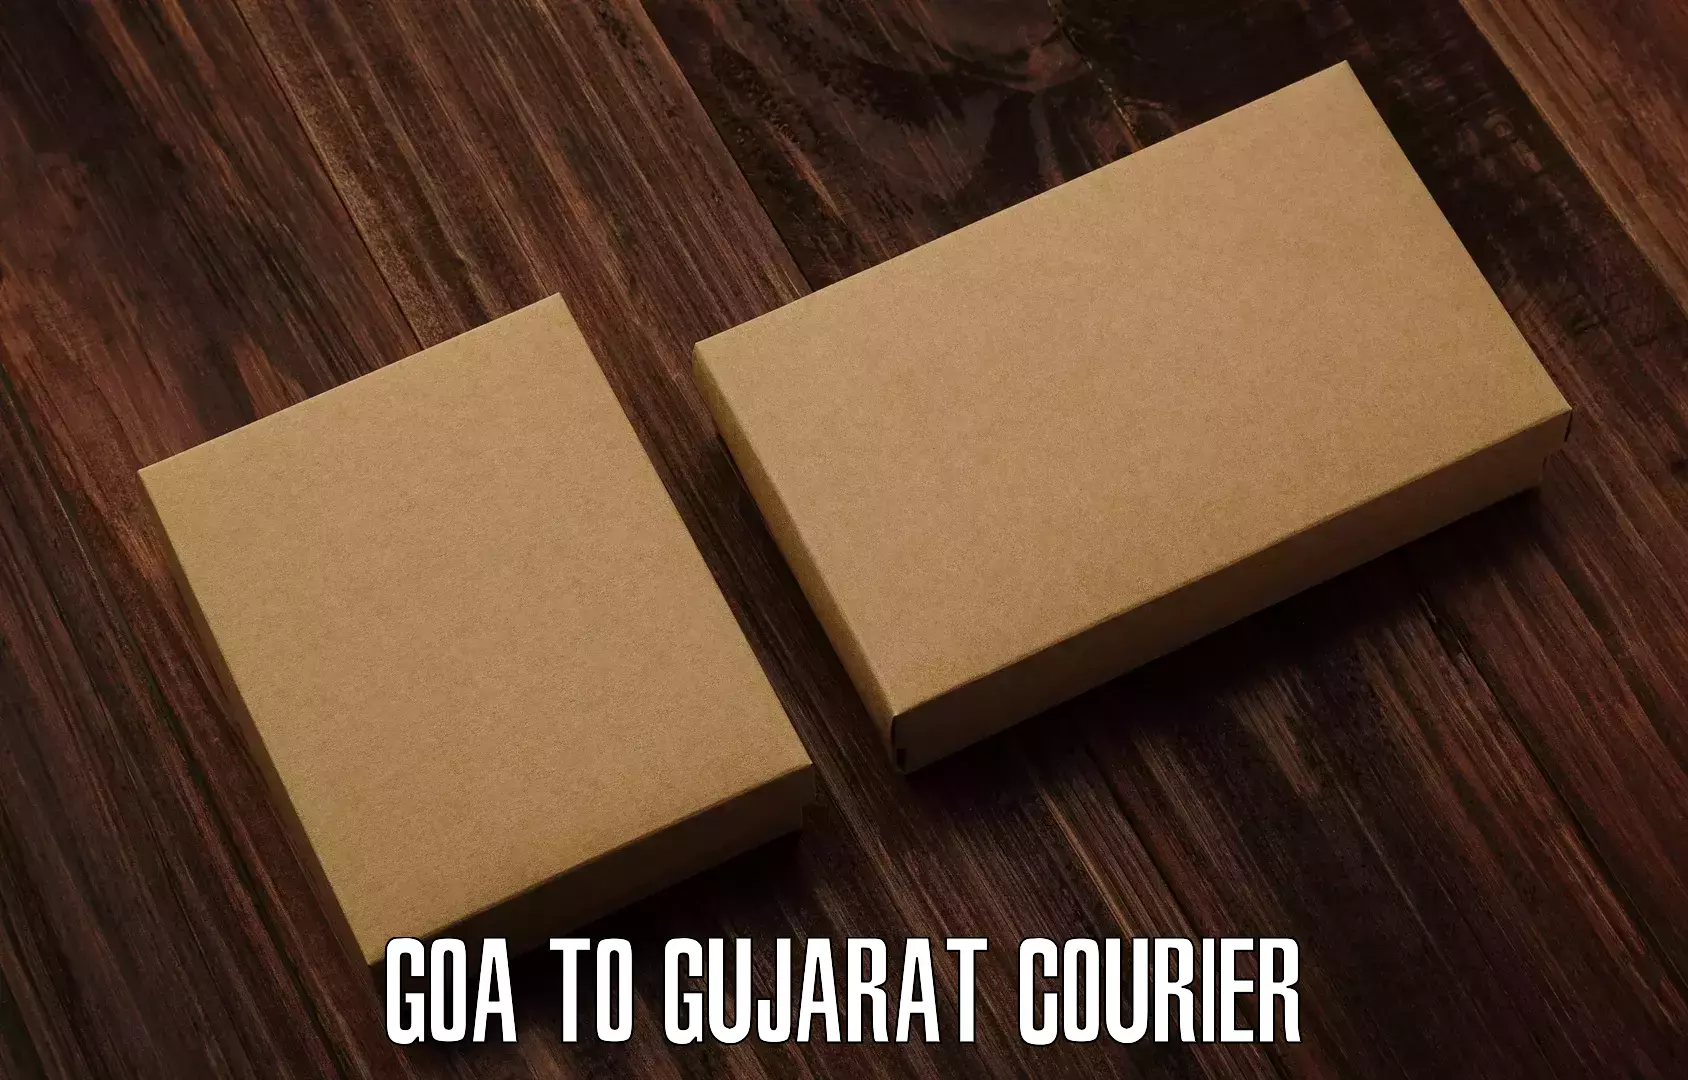 Express postal services Goa to Gujarat